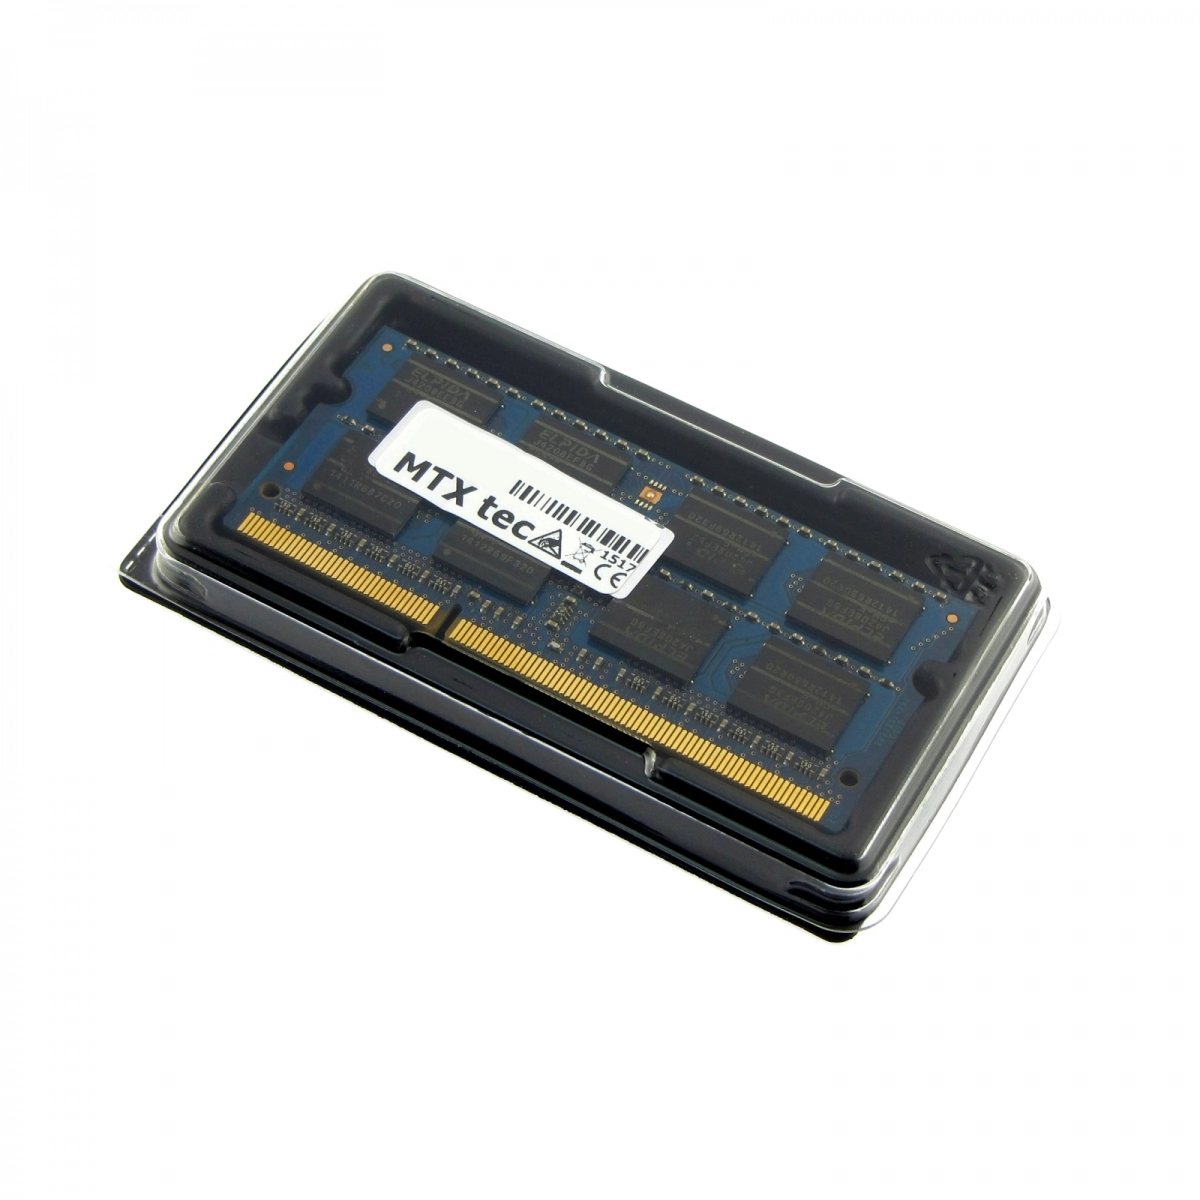 MTXtec Arbeitsspeicher 4 GB RAM für MEDION Akoya E7214 MD98410